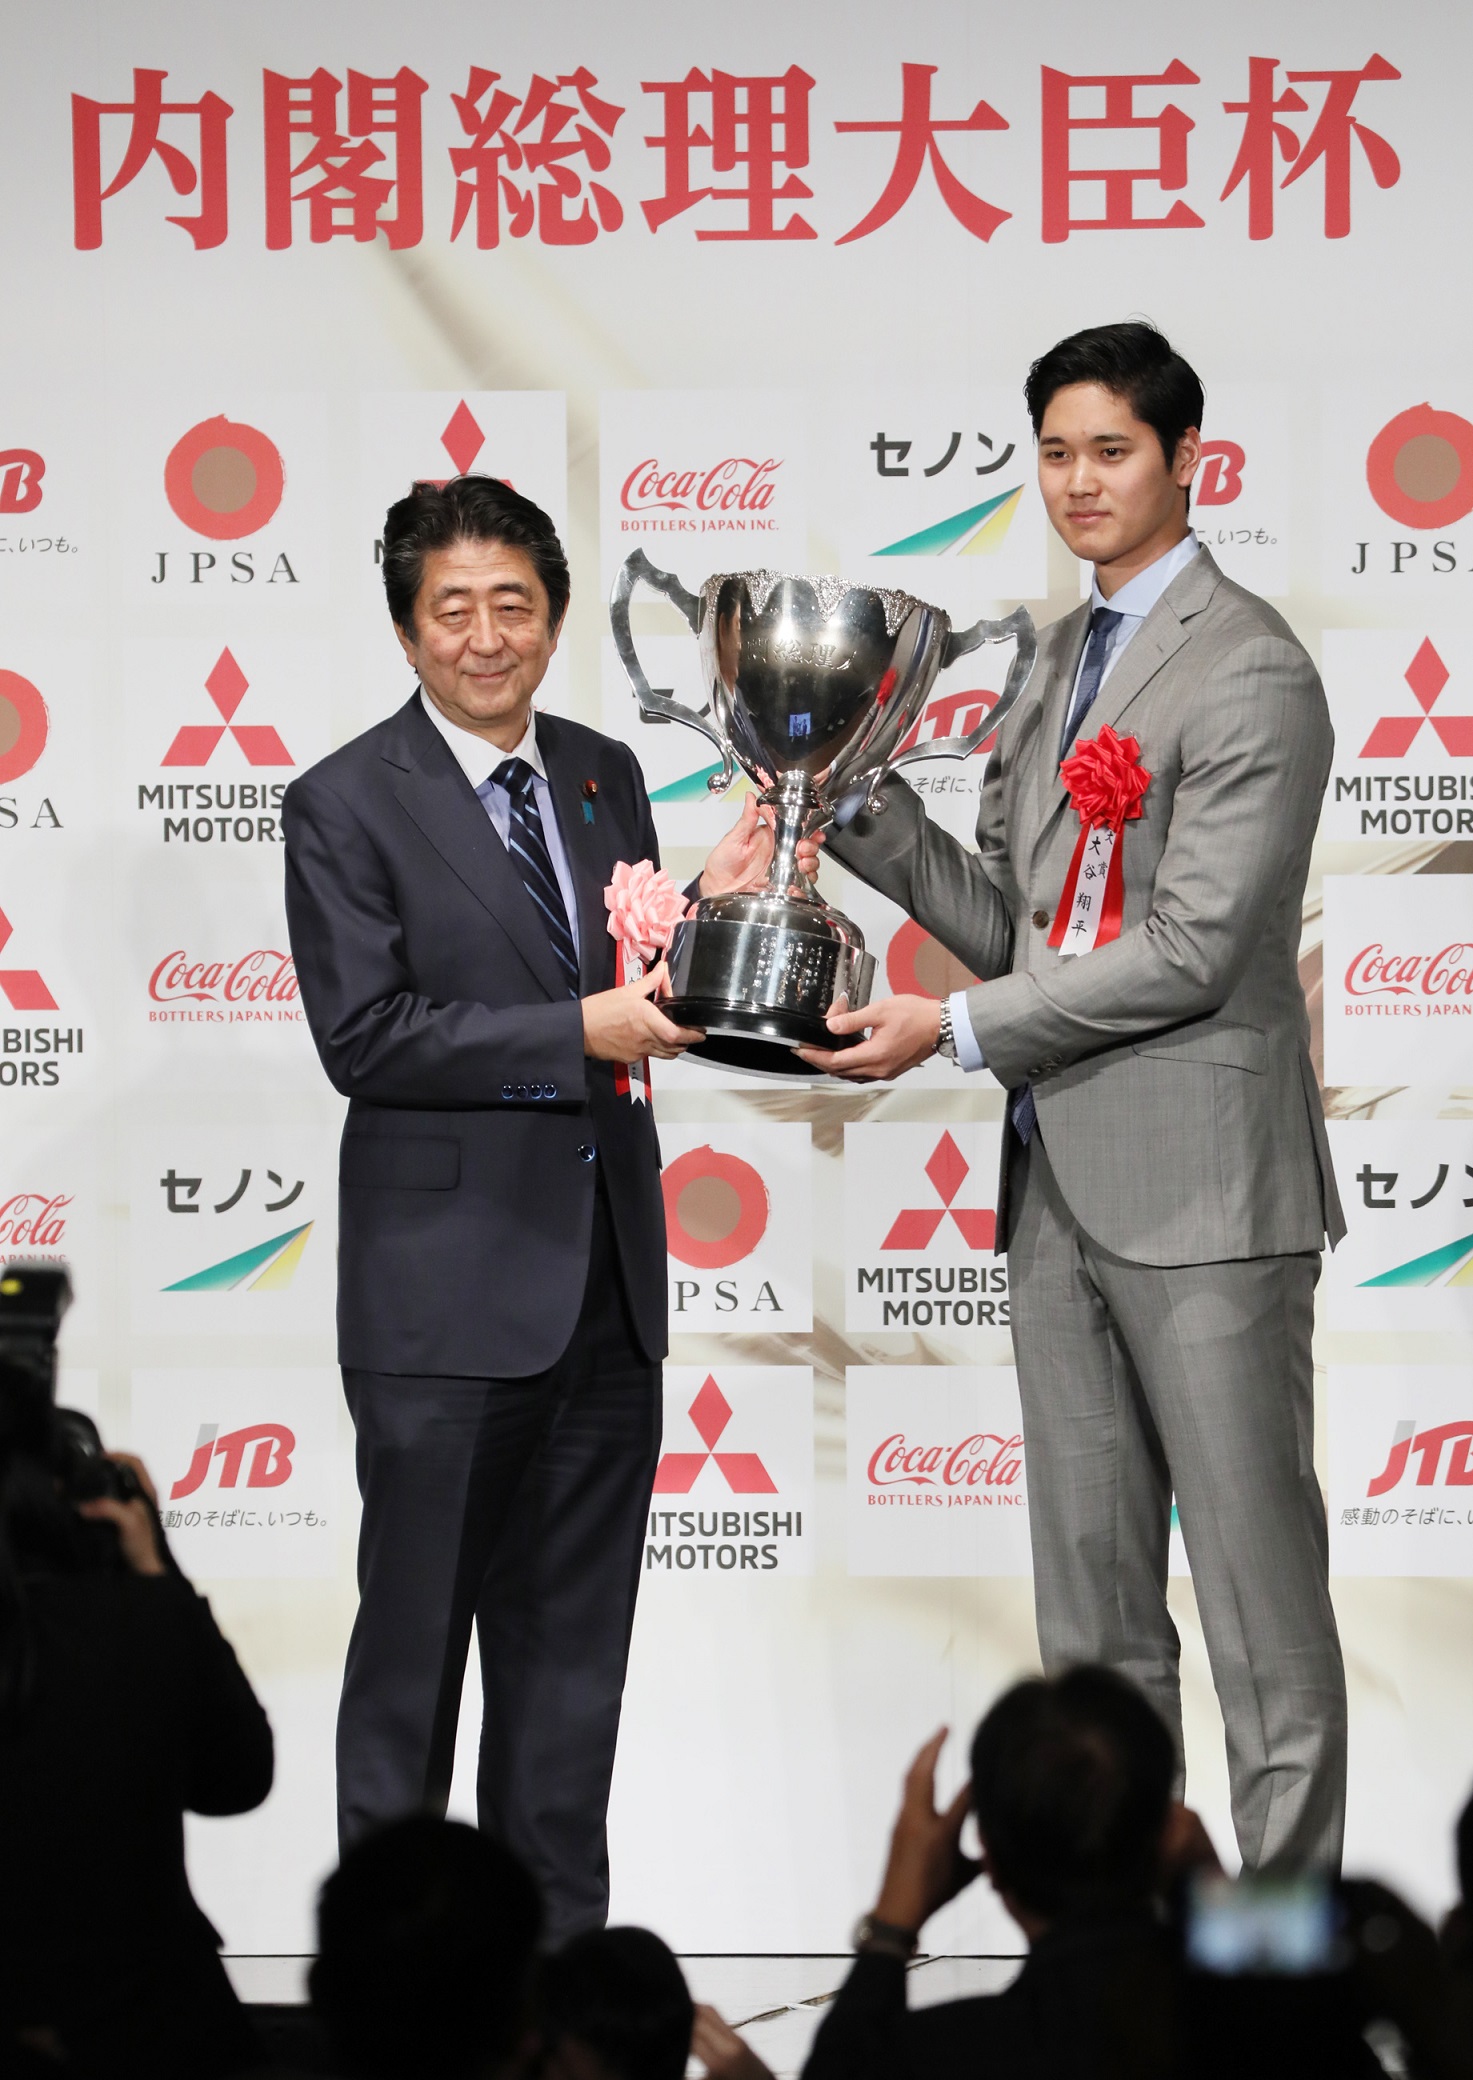 内阁总理大臣杯日本职业体育大奖颁奖仪式